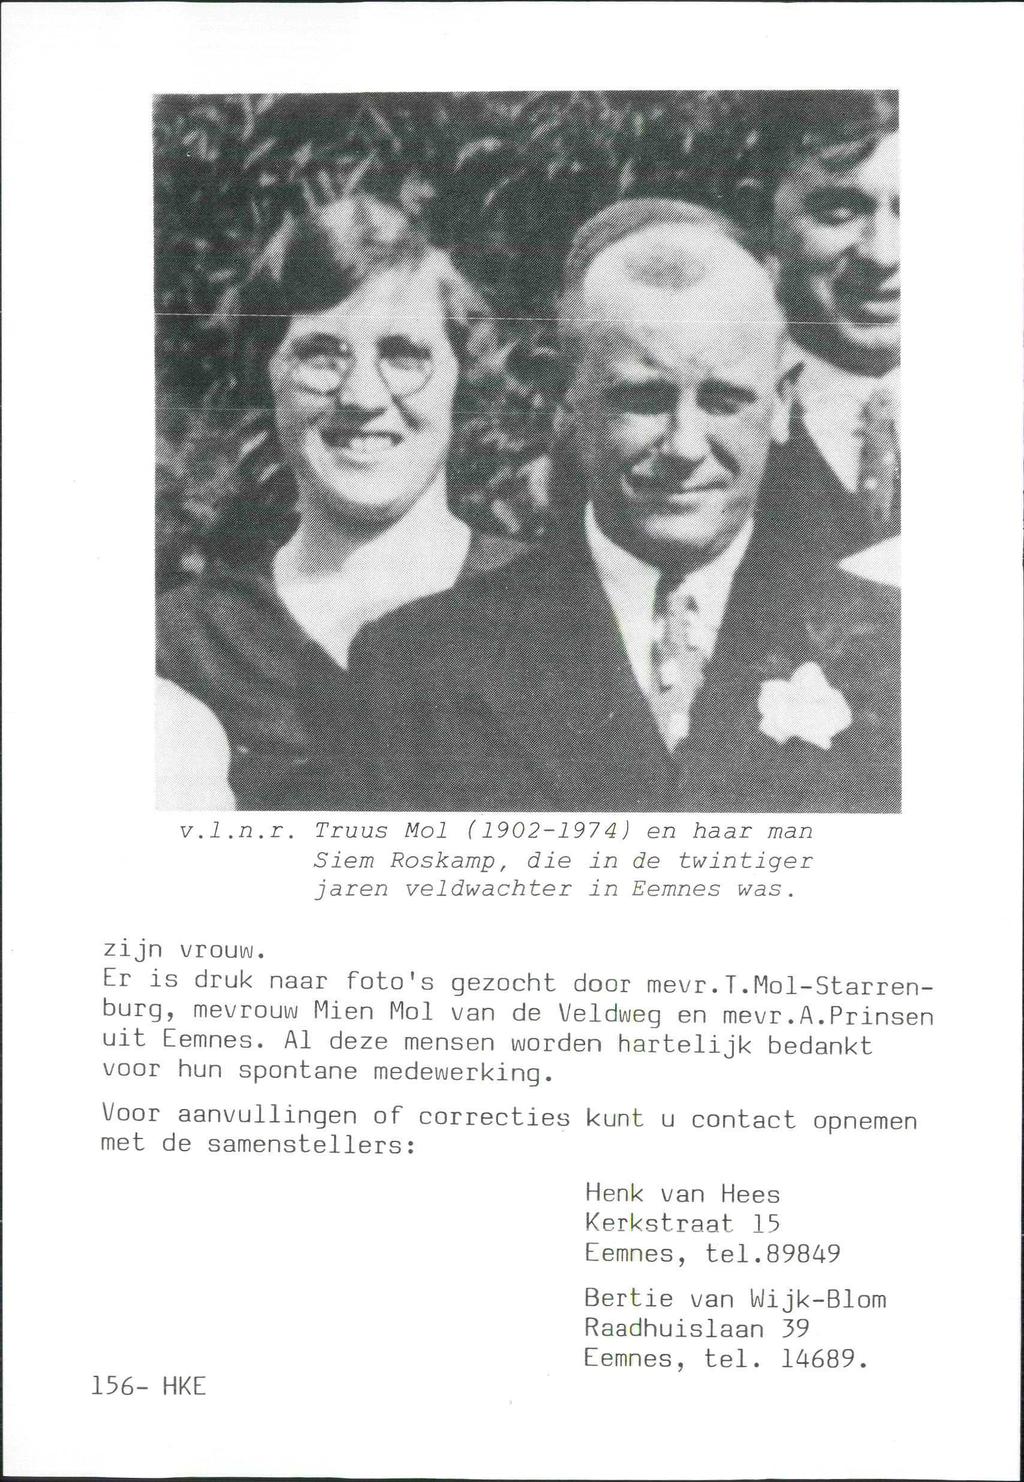 v.l.n.r. Truus Mol (1902-1974) en haar man Siem Roskamp, die in de twintiger jaren veldwachter in Eemnes was. zijn vrouw. Er is druk naar foto's gezocht door mevr.t.mol-starrenburg, mevrouw Mien Mol van de Veldweg en mevr.